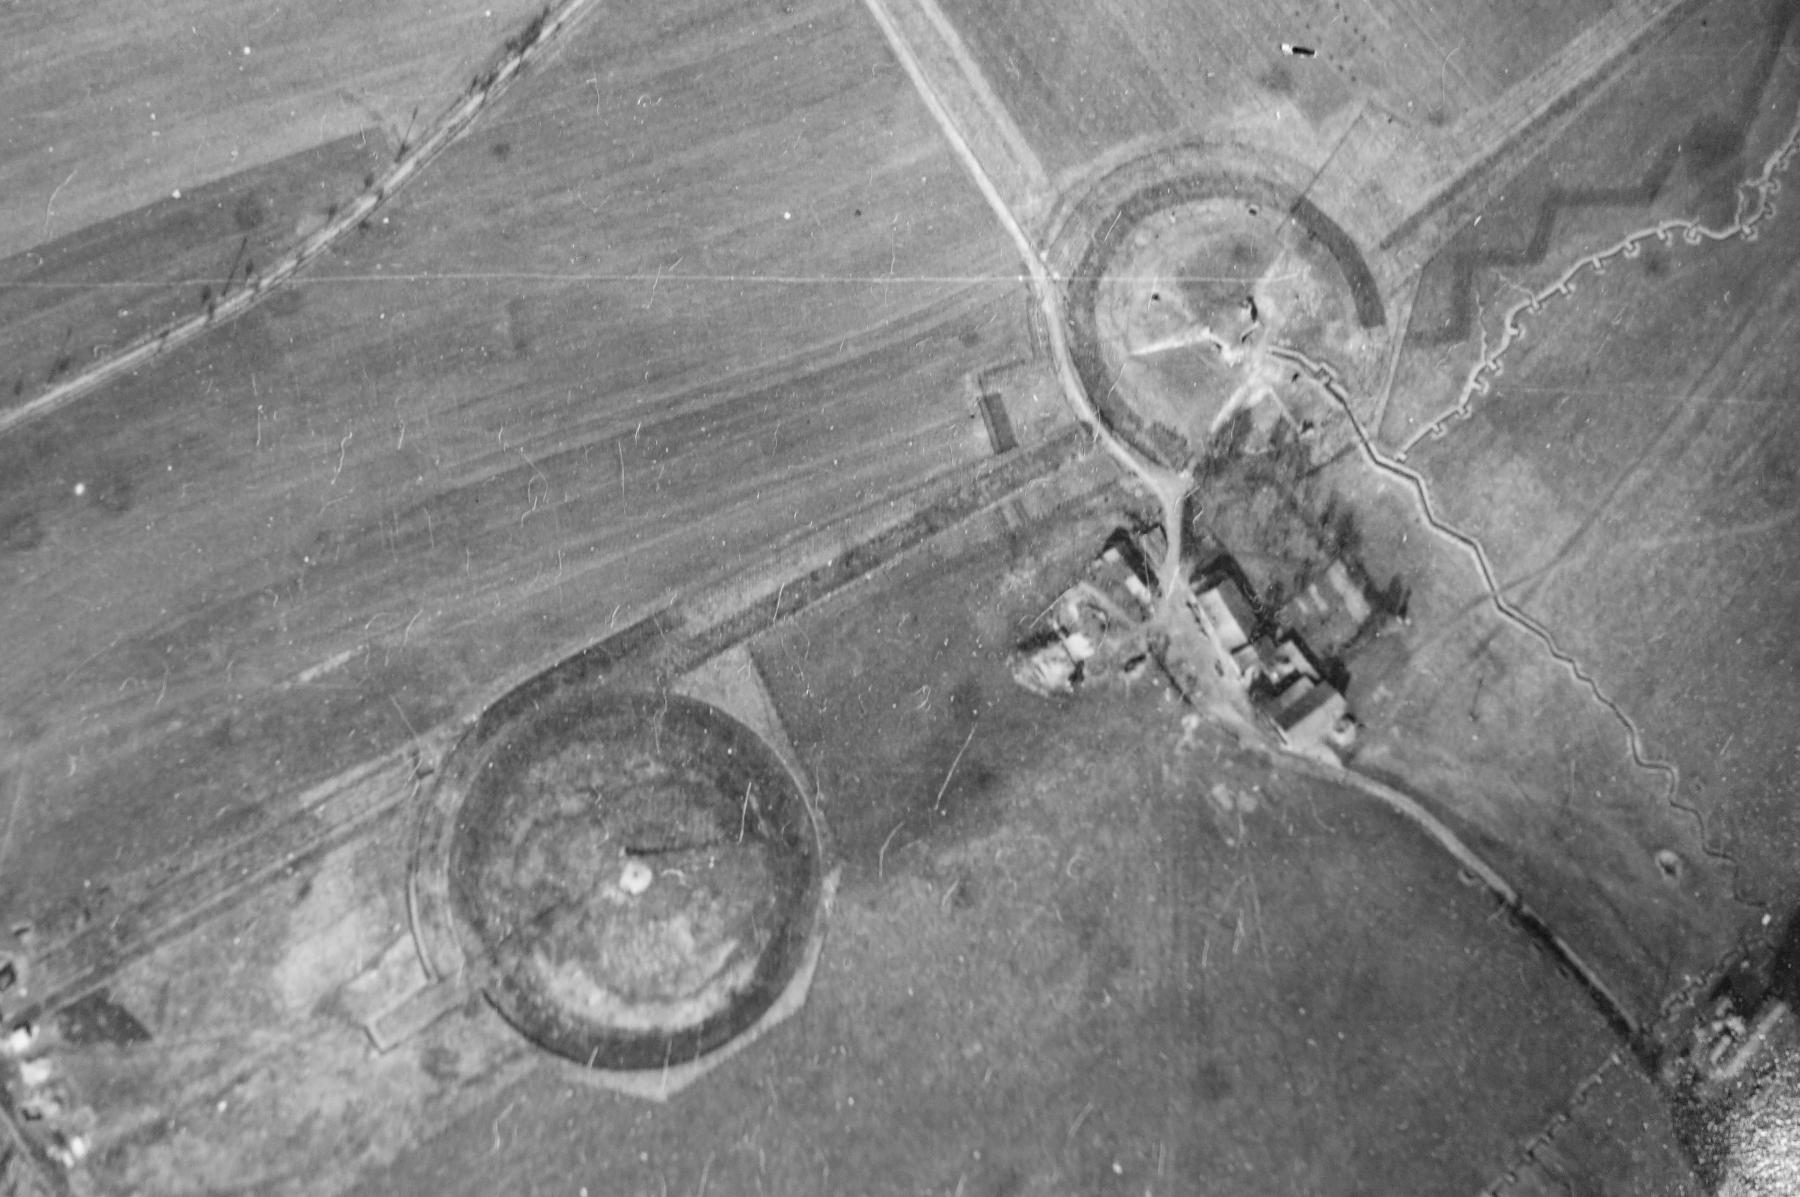 Ligne Maginot - FERME CHAPPY - A1 - (Ouvrage d'infanterie) - Vue aérienne - Mission F030 Altitude 2000 - 9 mars 1940 